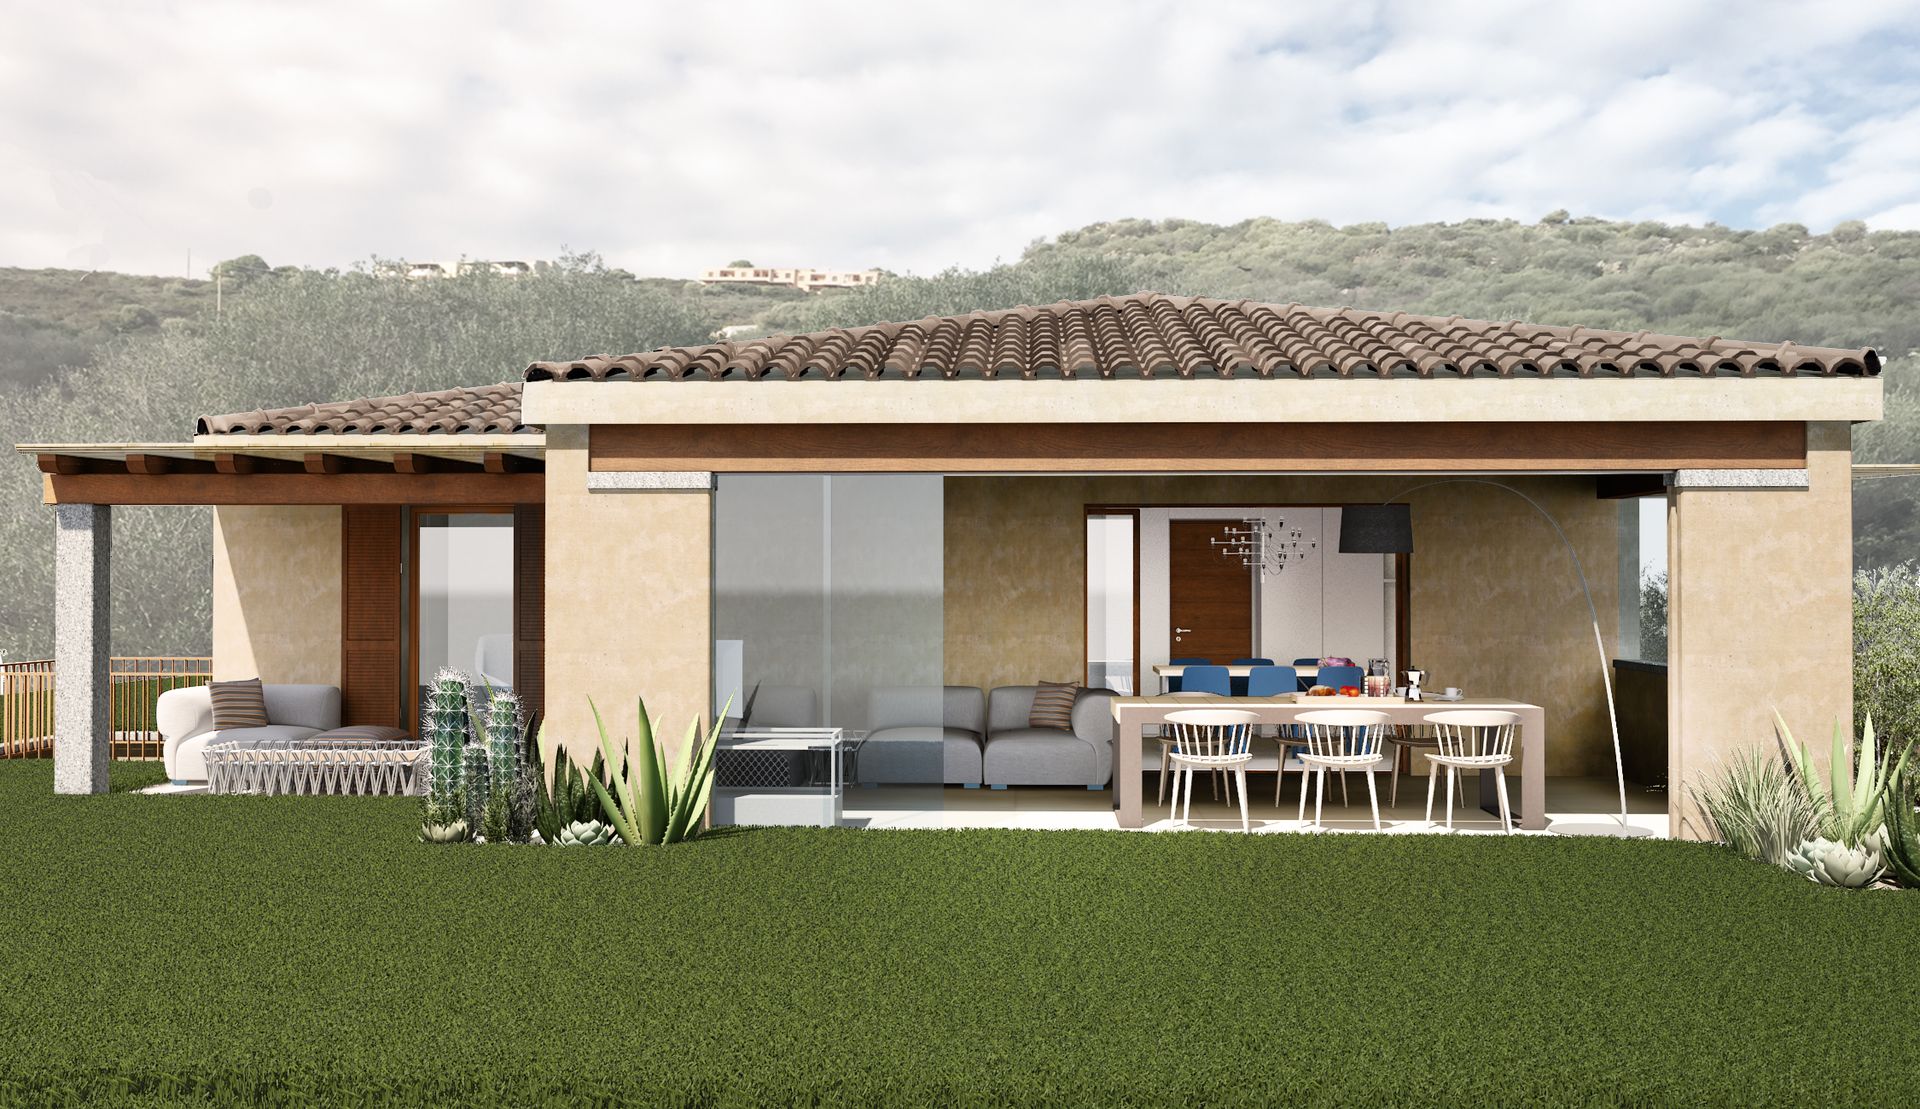 Progetto interior design, casa vacanze Golfo Aranci, Sardegna, vista isola della Tavolara. Officina Magisafi architettura design - esterni